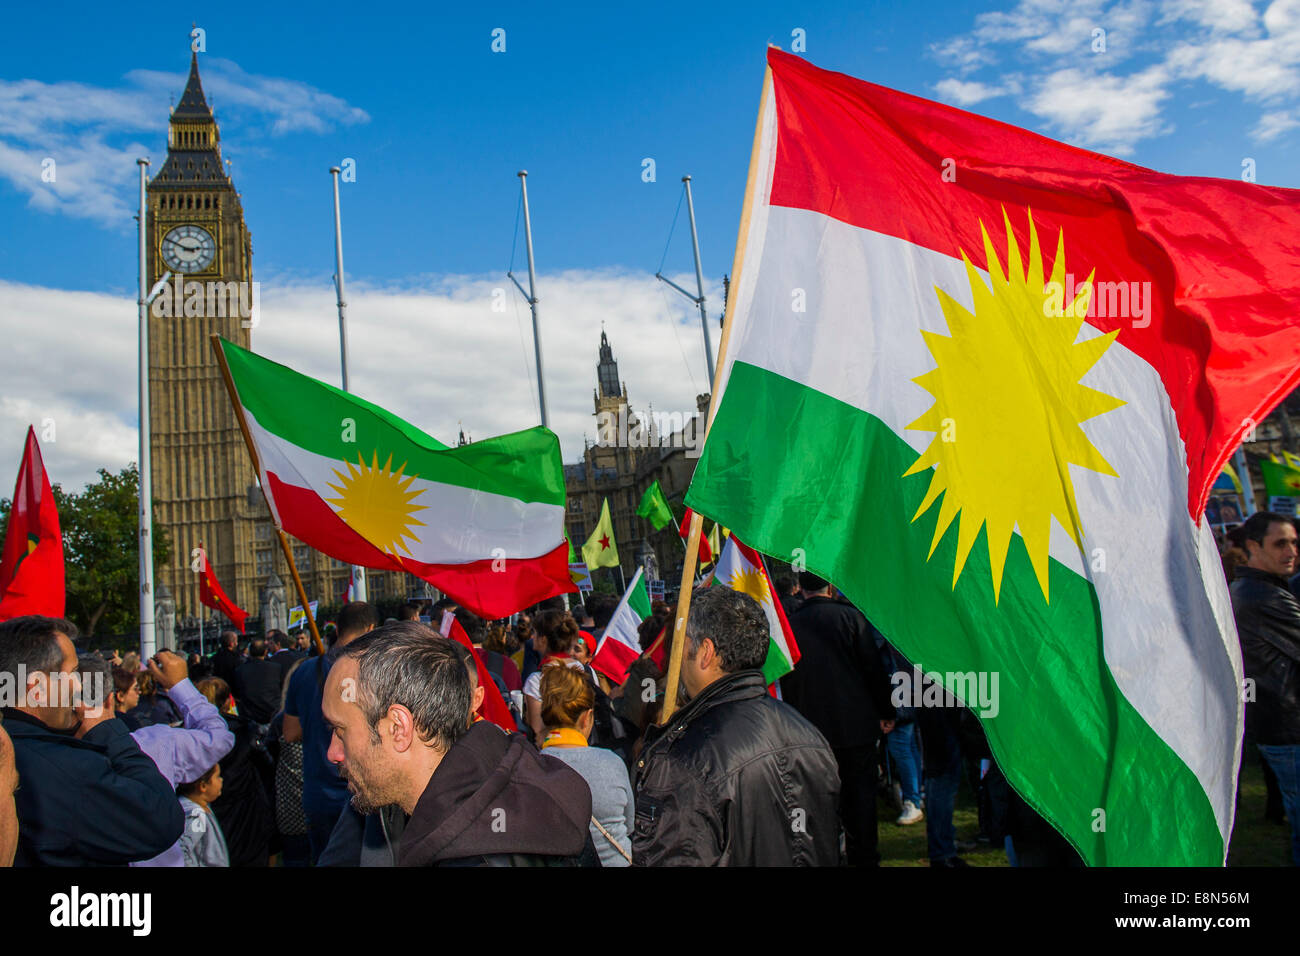 Londres, Royaume-Uni. Oct 11, 2014. Une manifestation de soutien exigeant pour les Kurdes et de blâmer la Turquie de ne pas aider est généralement pacifiques. Bien qu'une bavure stop and search donne le coup d'une confrontation qui mène à quelques arrestations. Le calme est rétabli, du moins temporairement, lorsque les intendants Kurdes forment une barrière entre les manifestants et les lignes de police. La place du parlement, Londres, 11 octobre 2014. Crédit : Guy Bell/Alamy Live News Banque D'Images